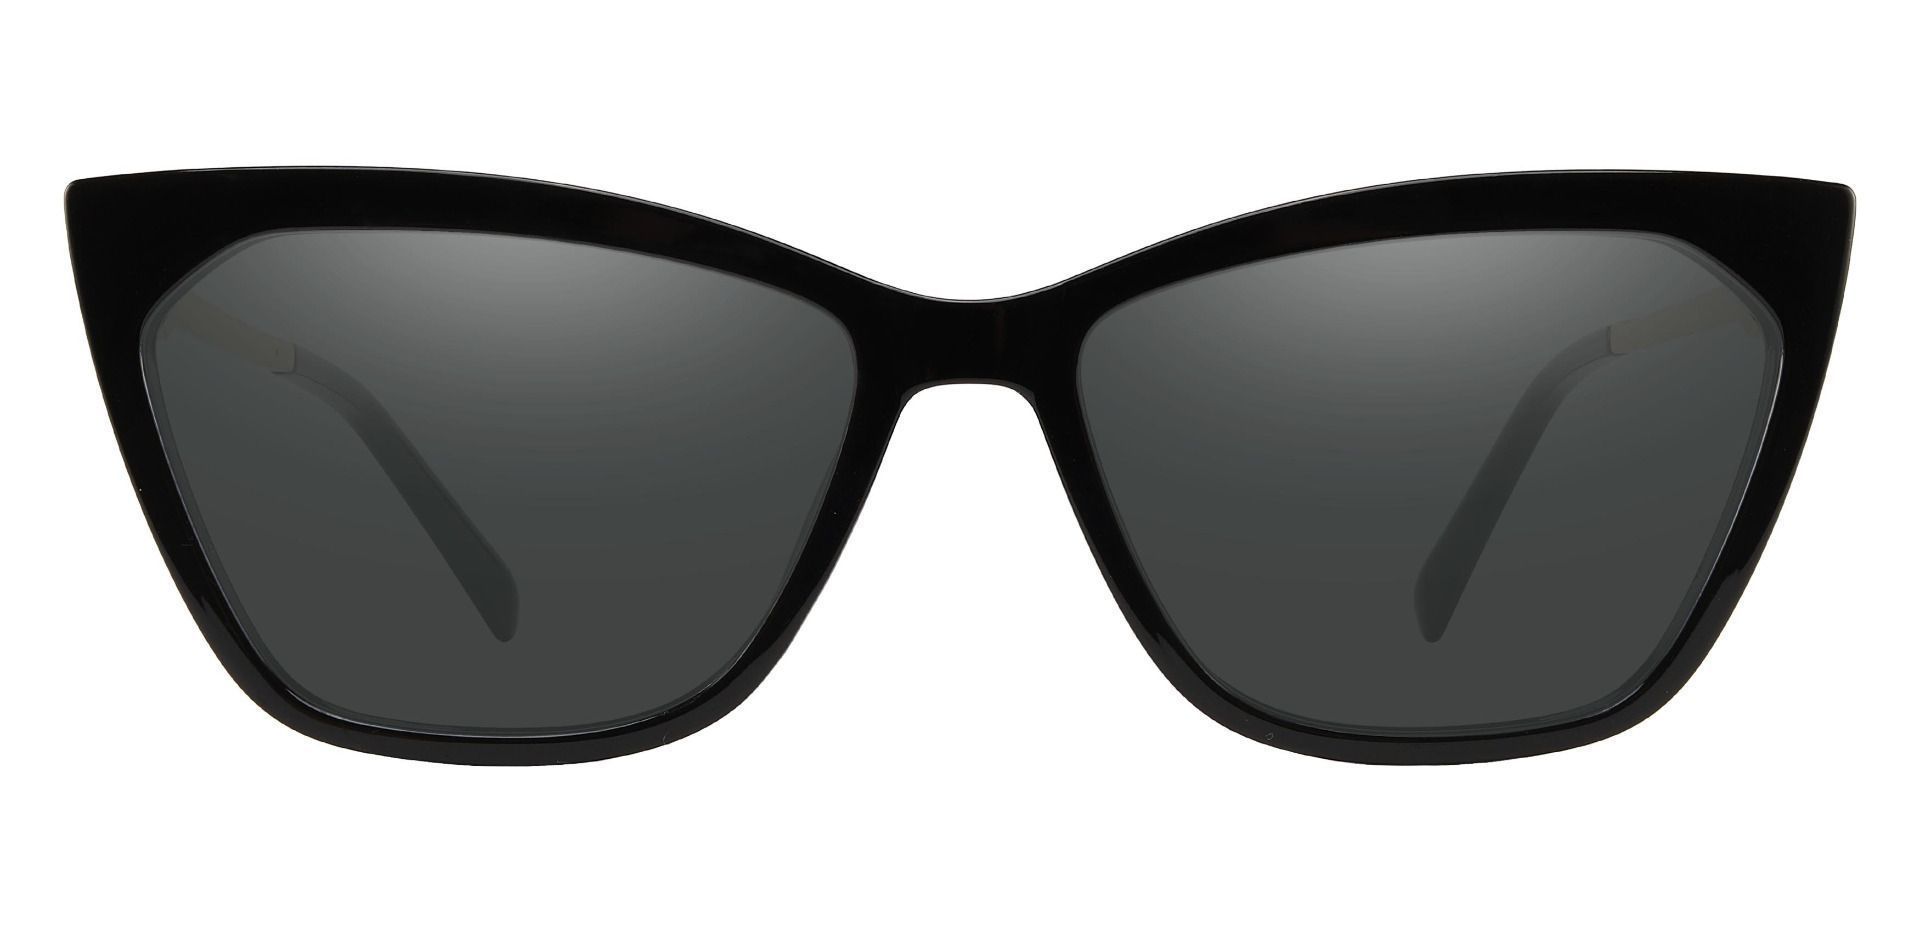 Addison Cat Eye Prescription Sunglasses - Black Frame With Gray Lenses